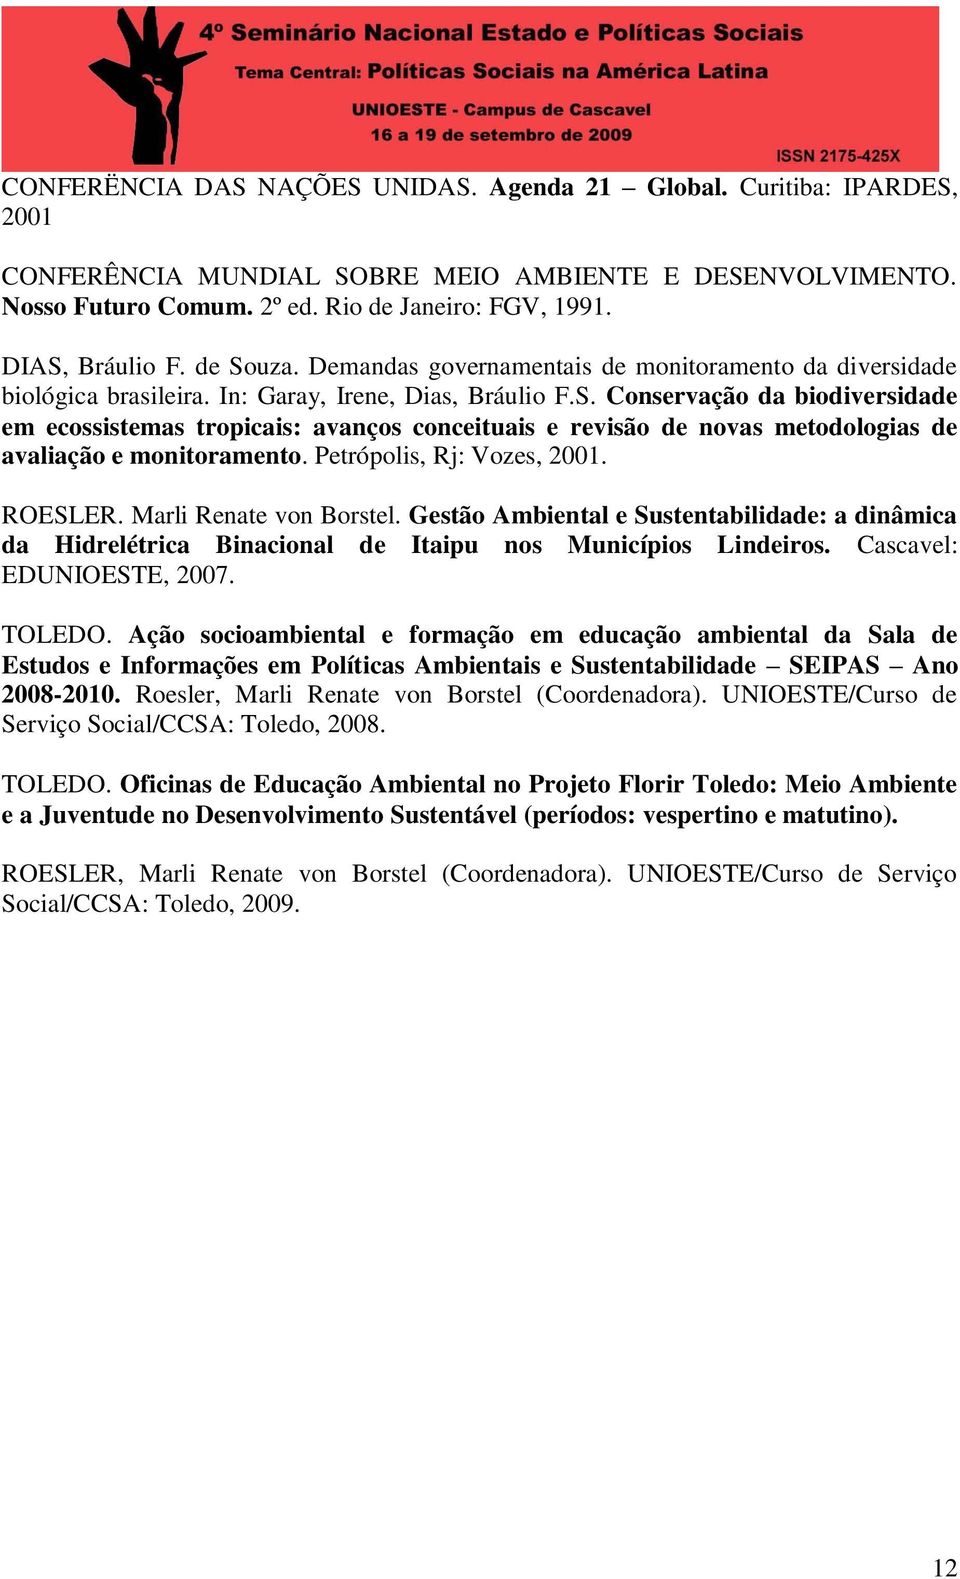 Petrópolis, Rj: Vozes, 2001. ROESLER. Marli Renate von Borstel. Gestão Ambiental e Sustentabilidade: a dinâmica da Hidrelétrica Binacional de Itaipu nos Municípios Lindeiros.